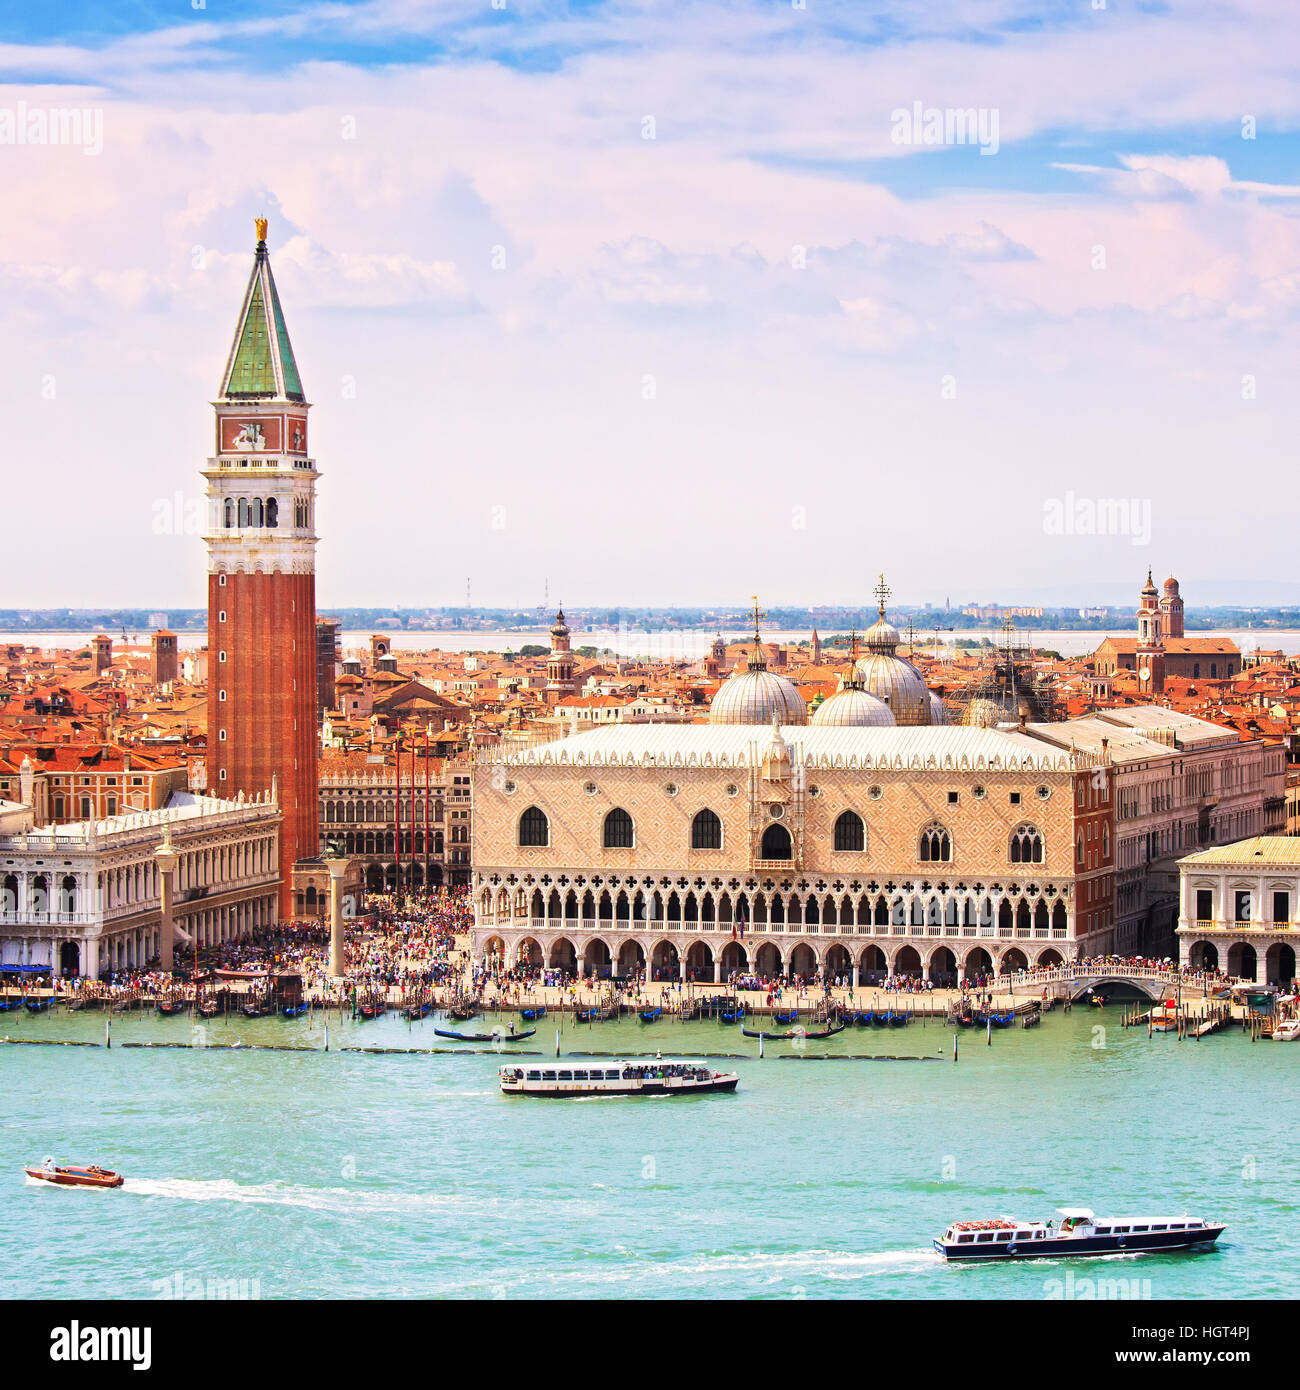 Luftaufnahme des Piazza San Marco oder St Mark Platz, Campanile und Ducale oder Dogenpalast Venedig Wahrzeichen. Italien, Europa. Stockfoto